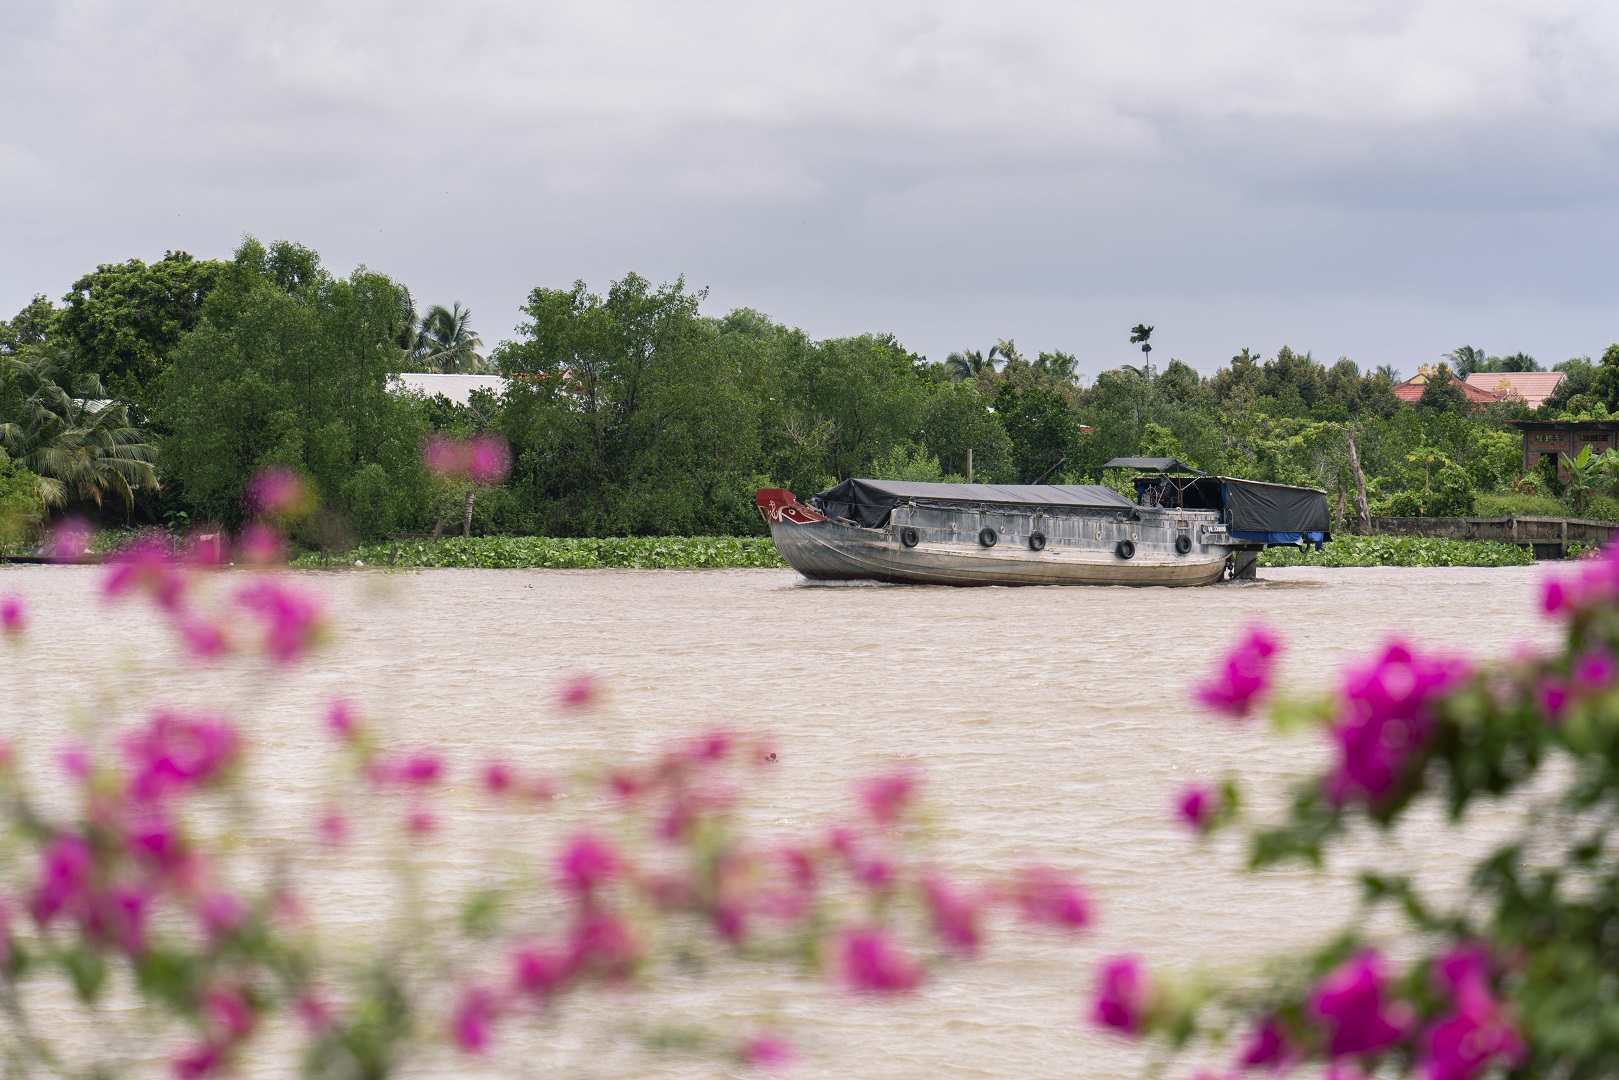 Tien Giang – an unmissable destination in Vietnam’s Mekong Delta